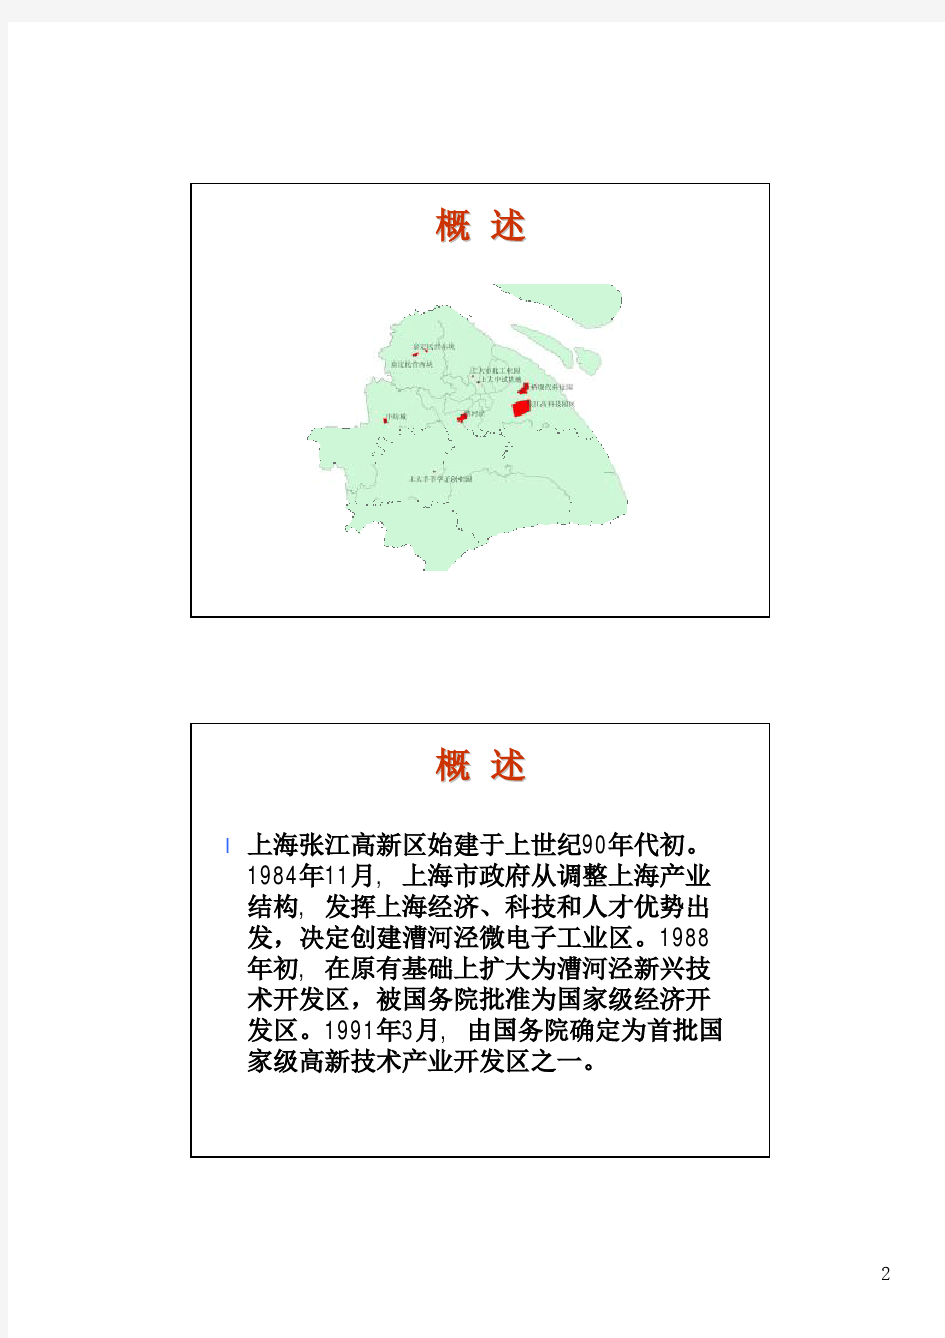 上海科技园区现状及发展展望